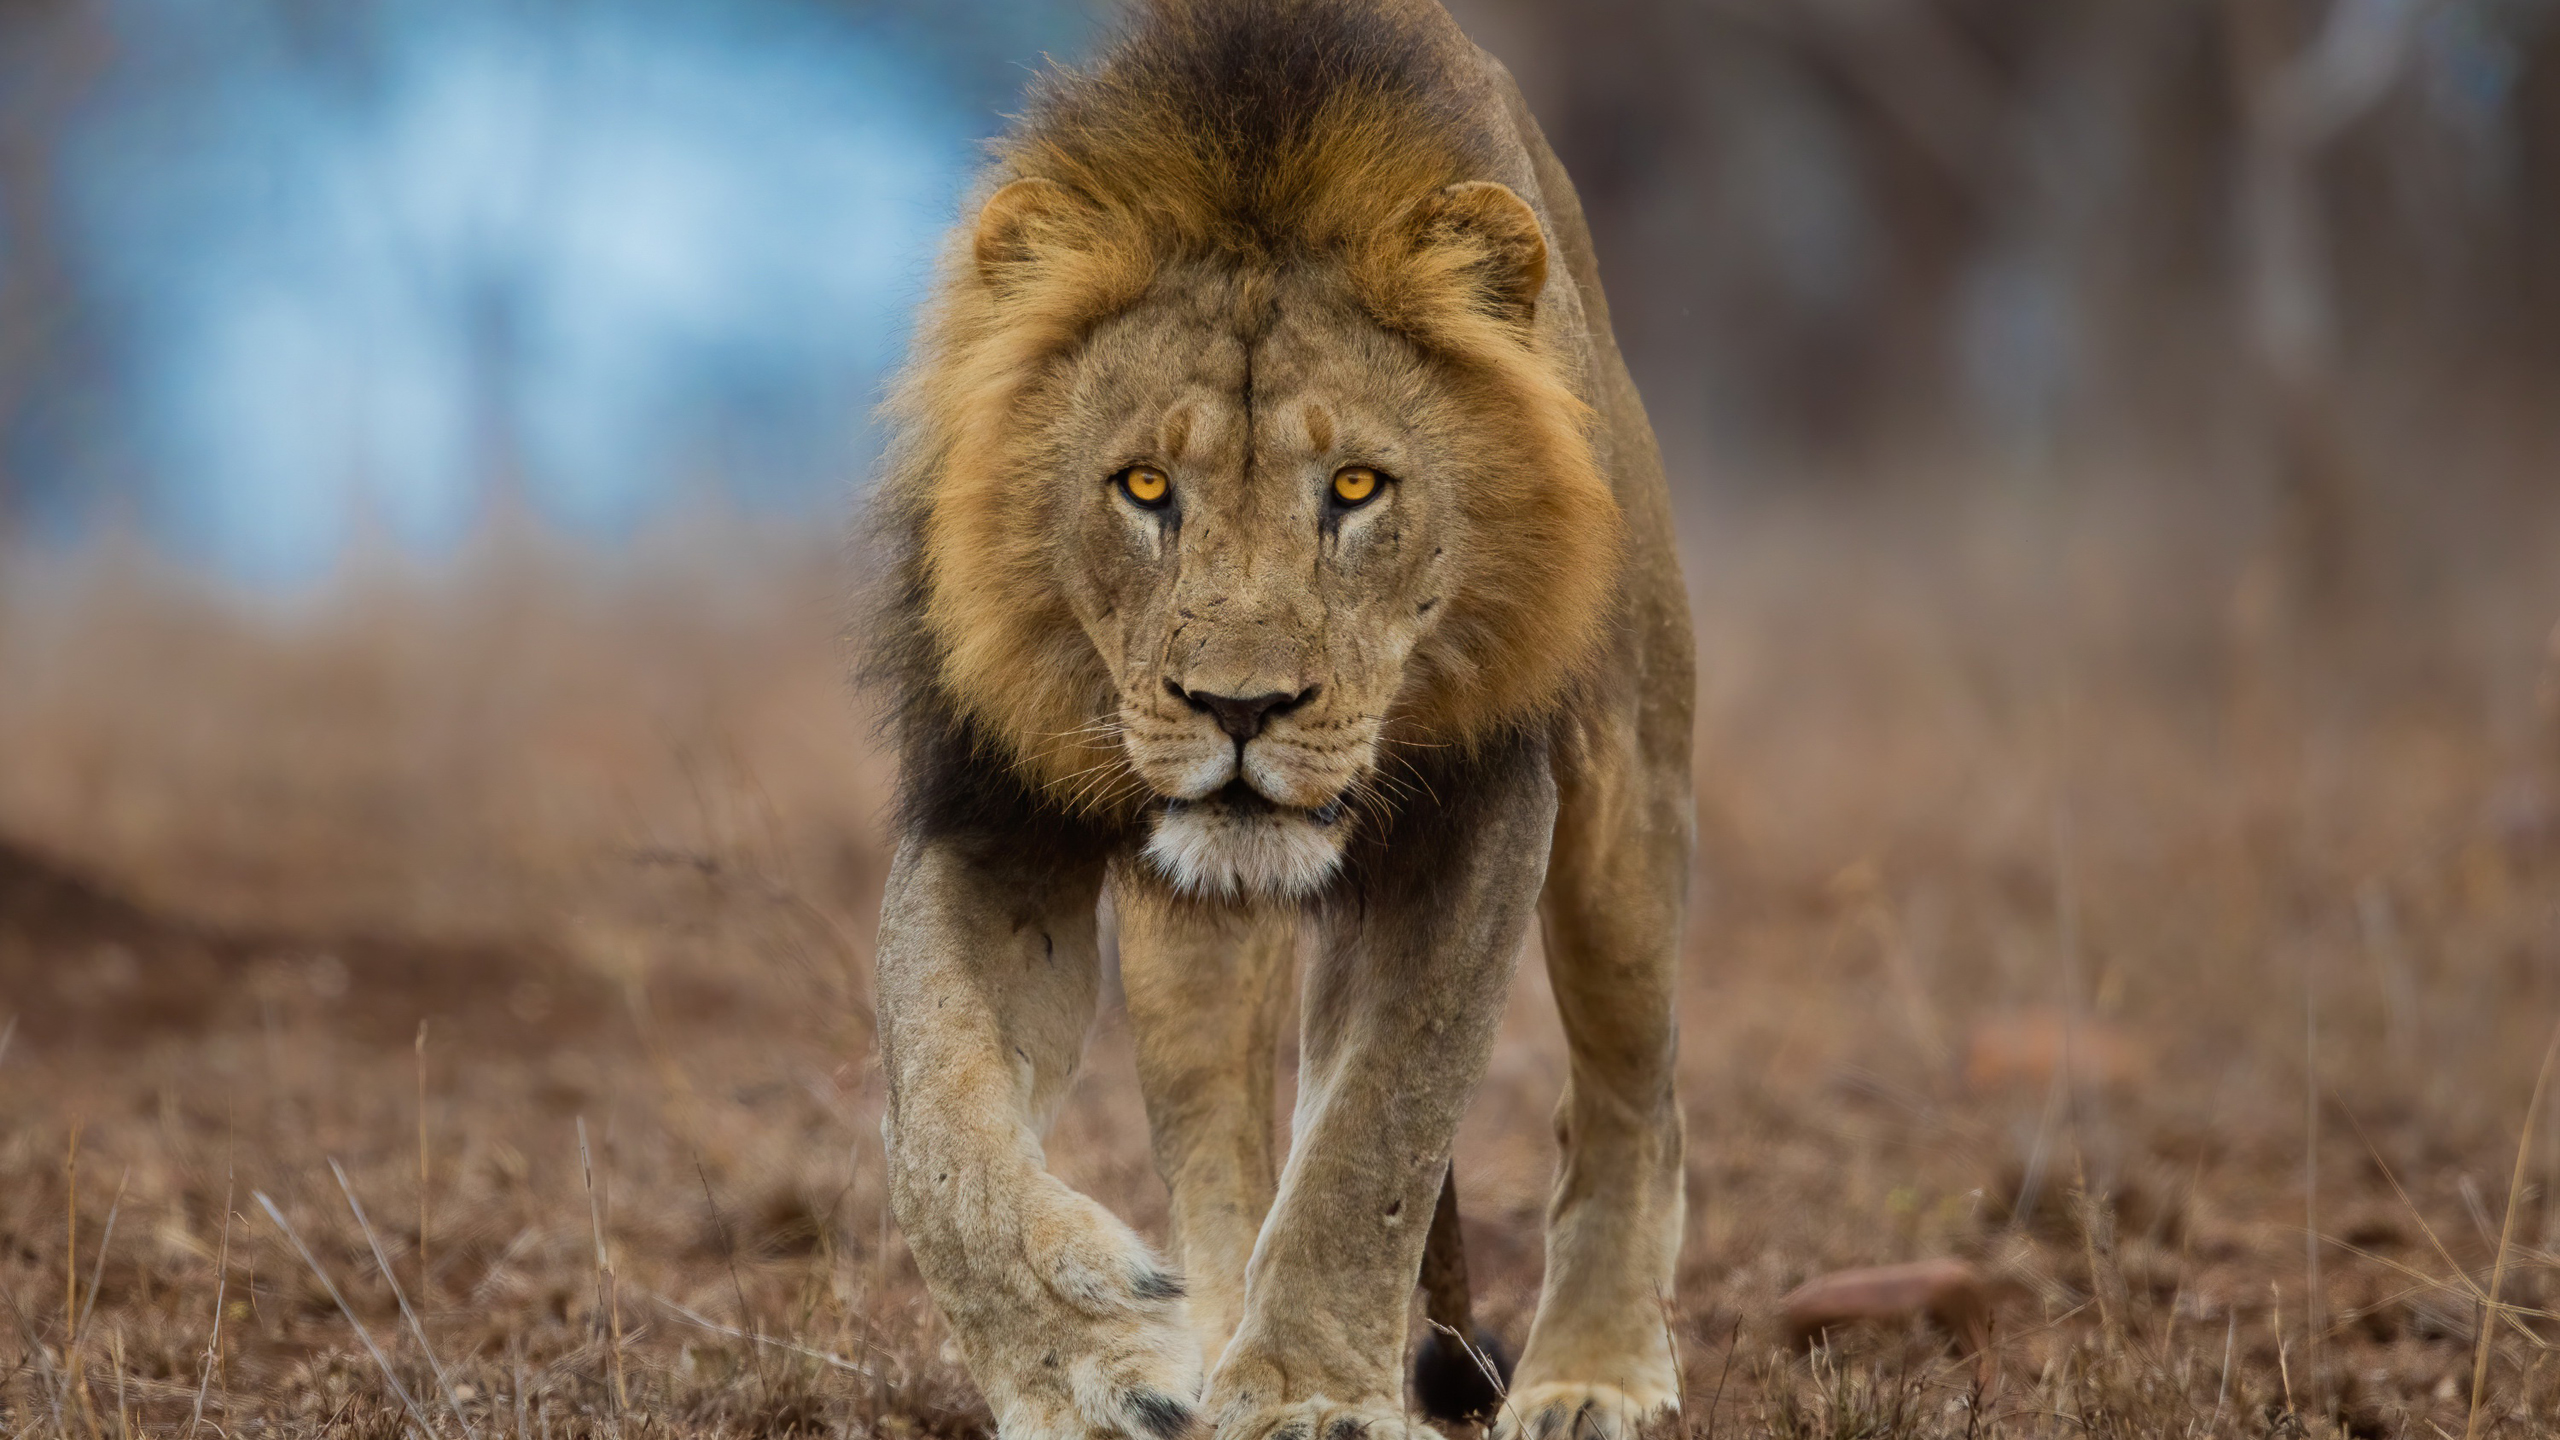 Lion Is Walking On Dry Grassland In Blur Wallpaper 2K Lion